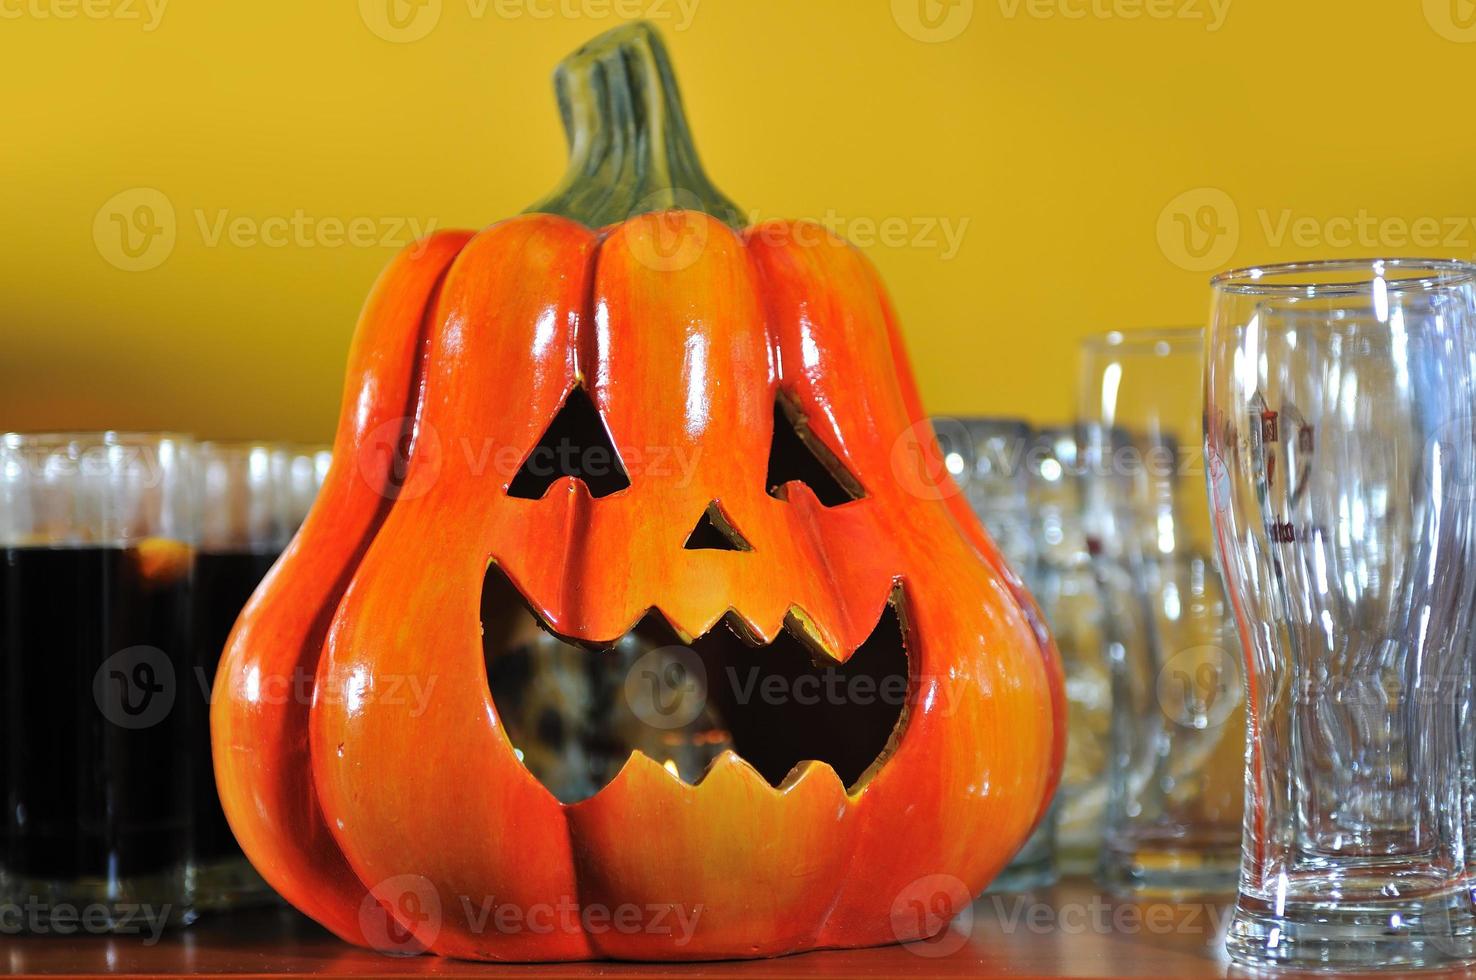 festa de halloween abóbora e taças de vinho close-up foto